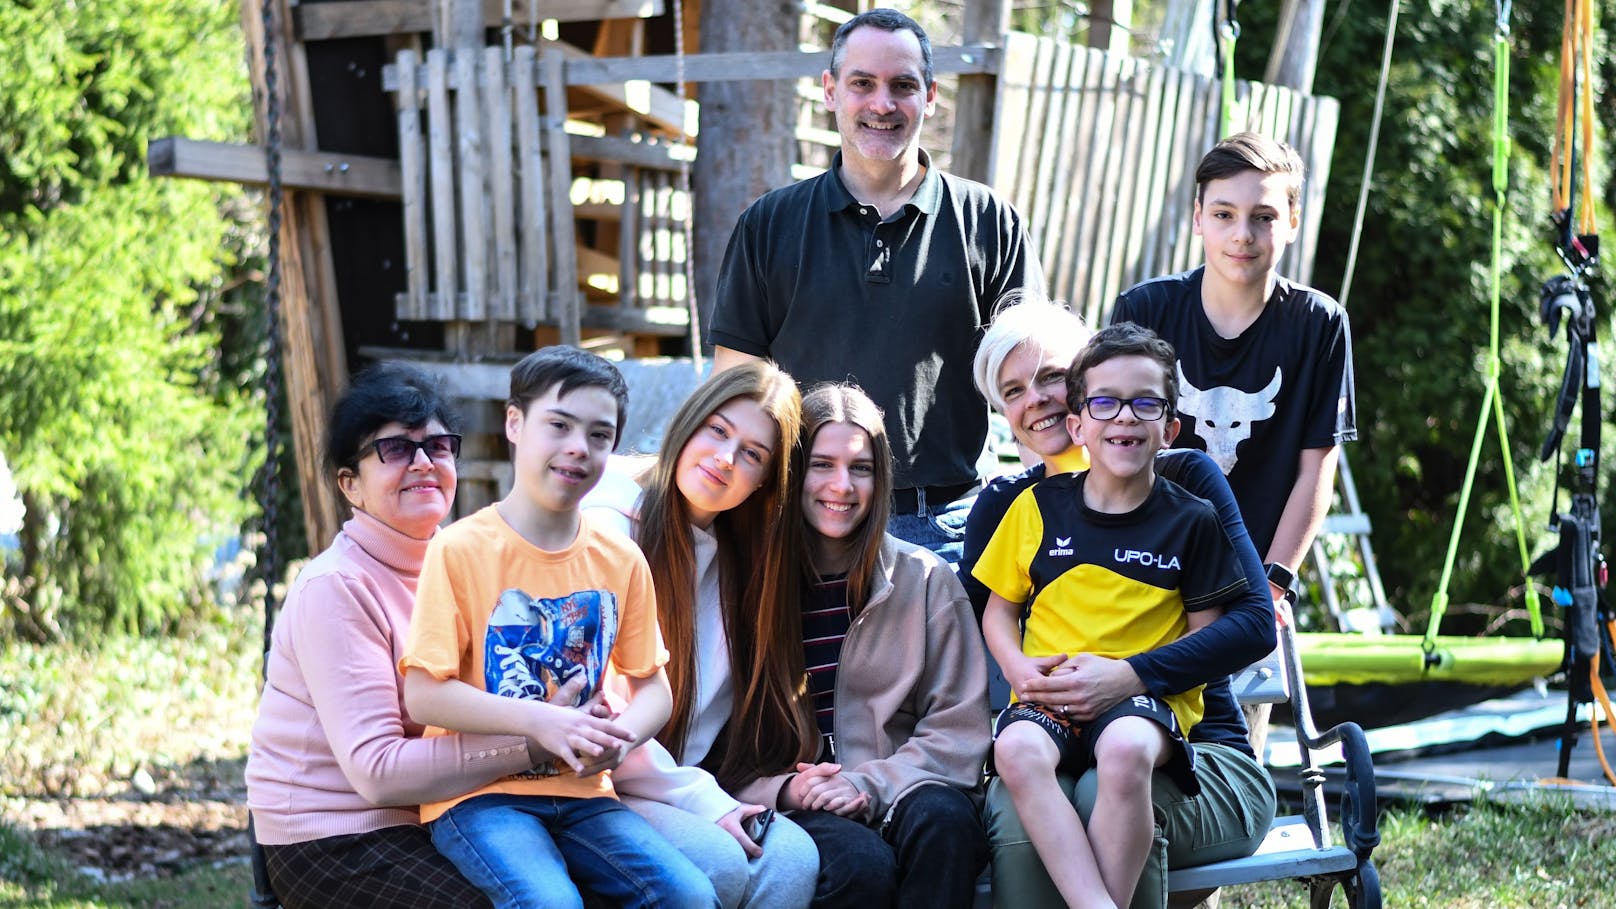 Familie Hochrainer aus Berndorf nahm drei Flüchtlinge aus der Ukraine auf. V.l n.r. Larissa (66), Luis Hochrainer (10), Alexandra (18), Xenia (13), Markus Hochrainer (49), Birgit Hochrainer (48), Anton Hochrainer (7) und Emil Hochrainer (12)